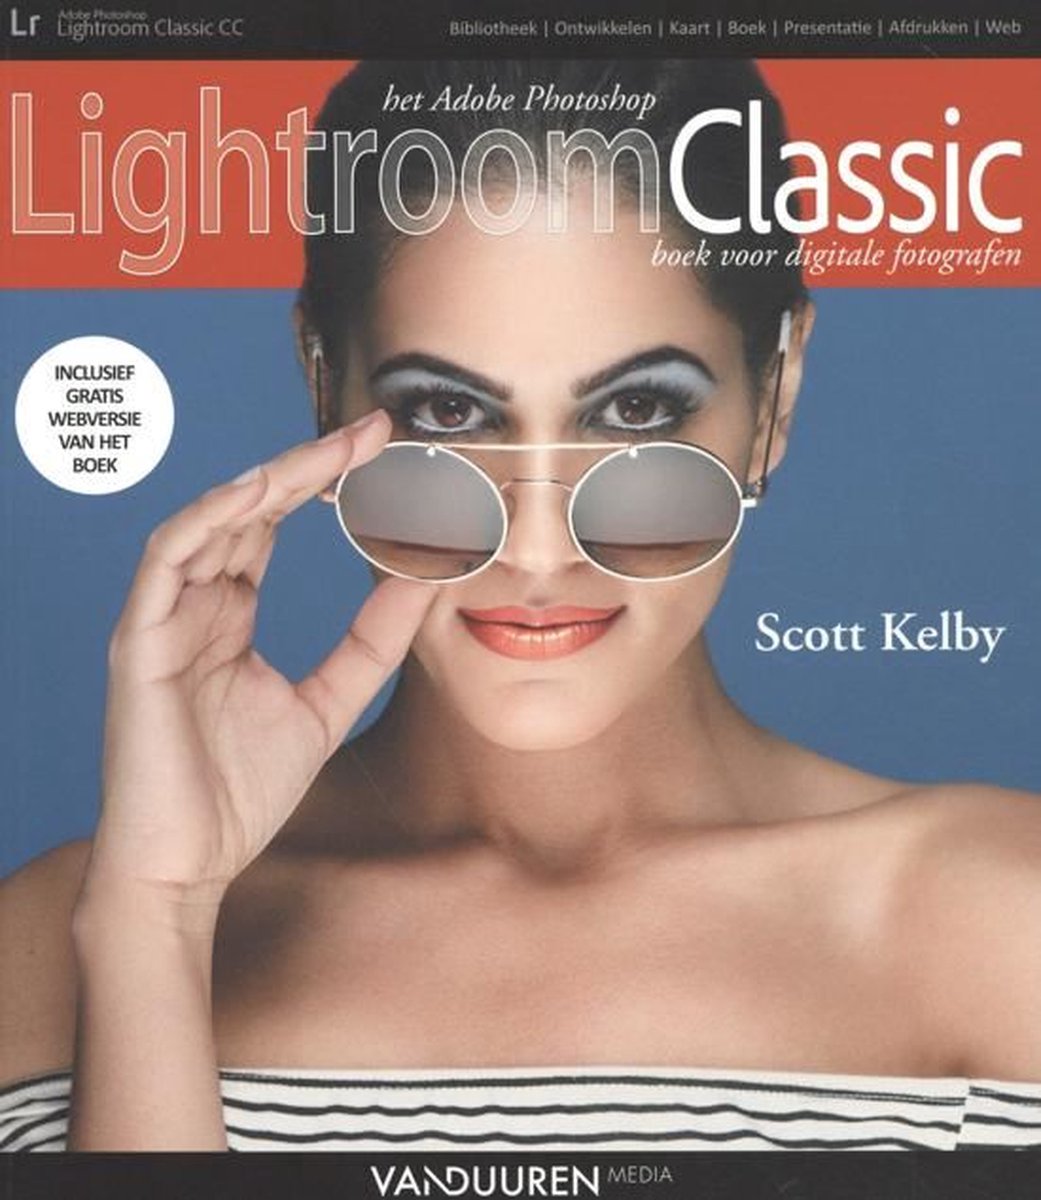 Het Adobe Photoshop Lightroom Classic boek voor digitale fotografen - Scott Kelby